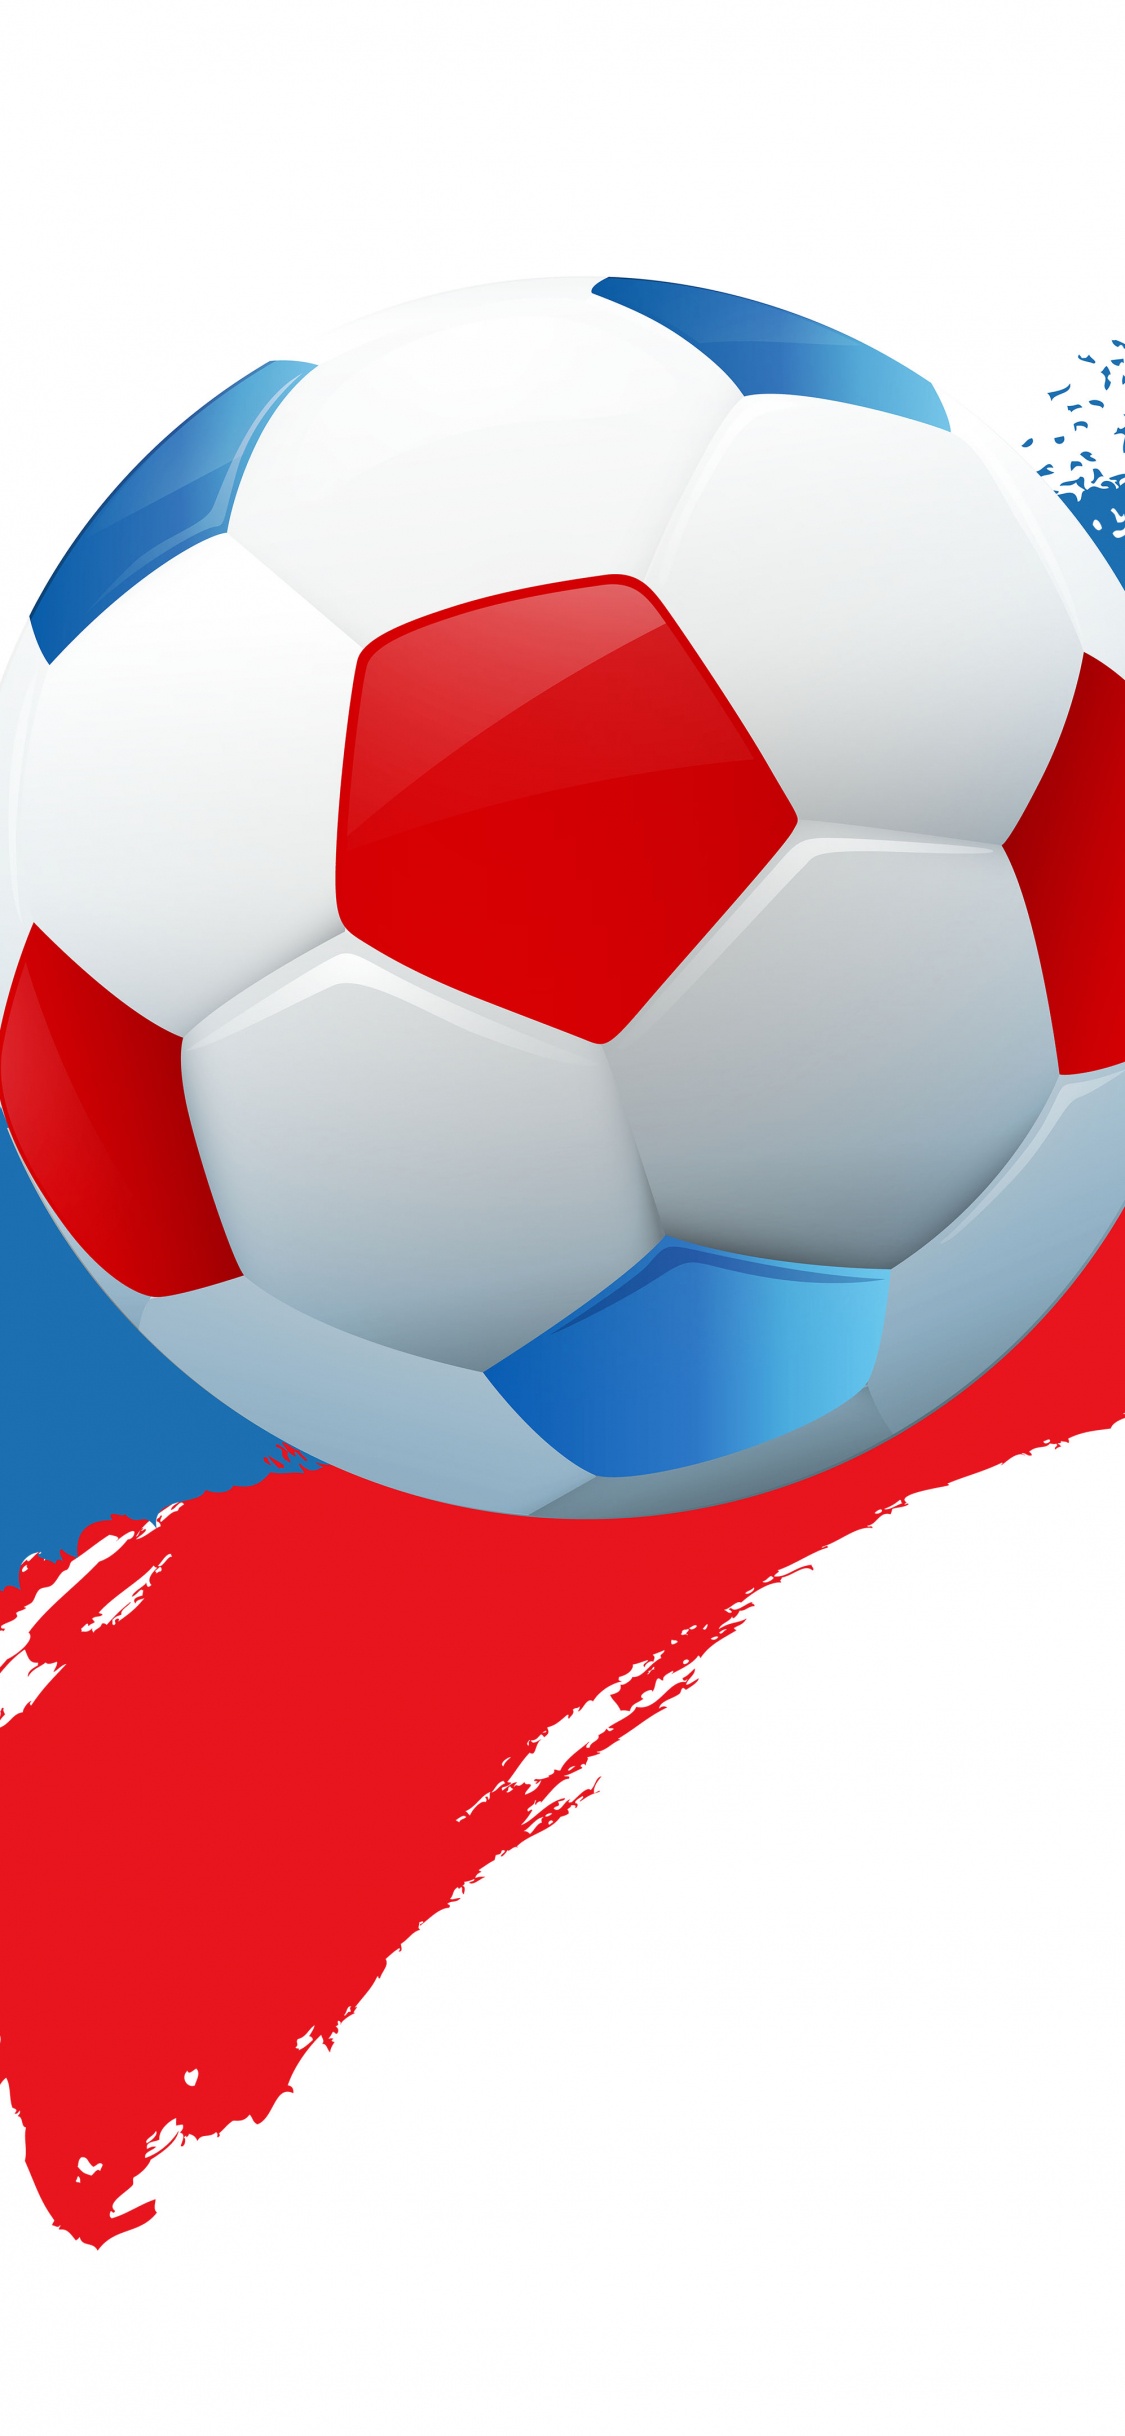 2018年世界杯, 球, 国际足联, 足球, 体育设备 壁纸 1125x2436 允许